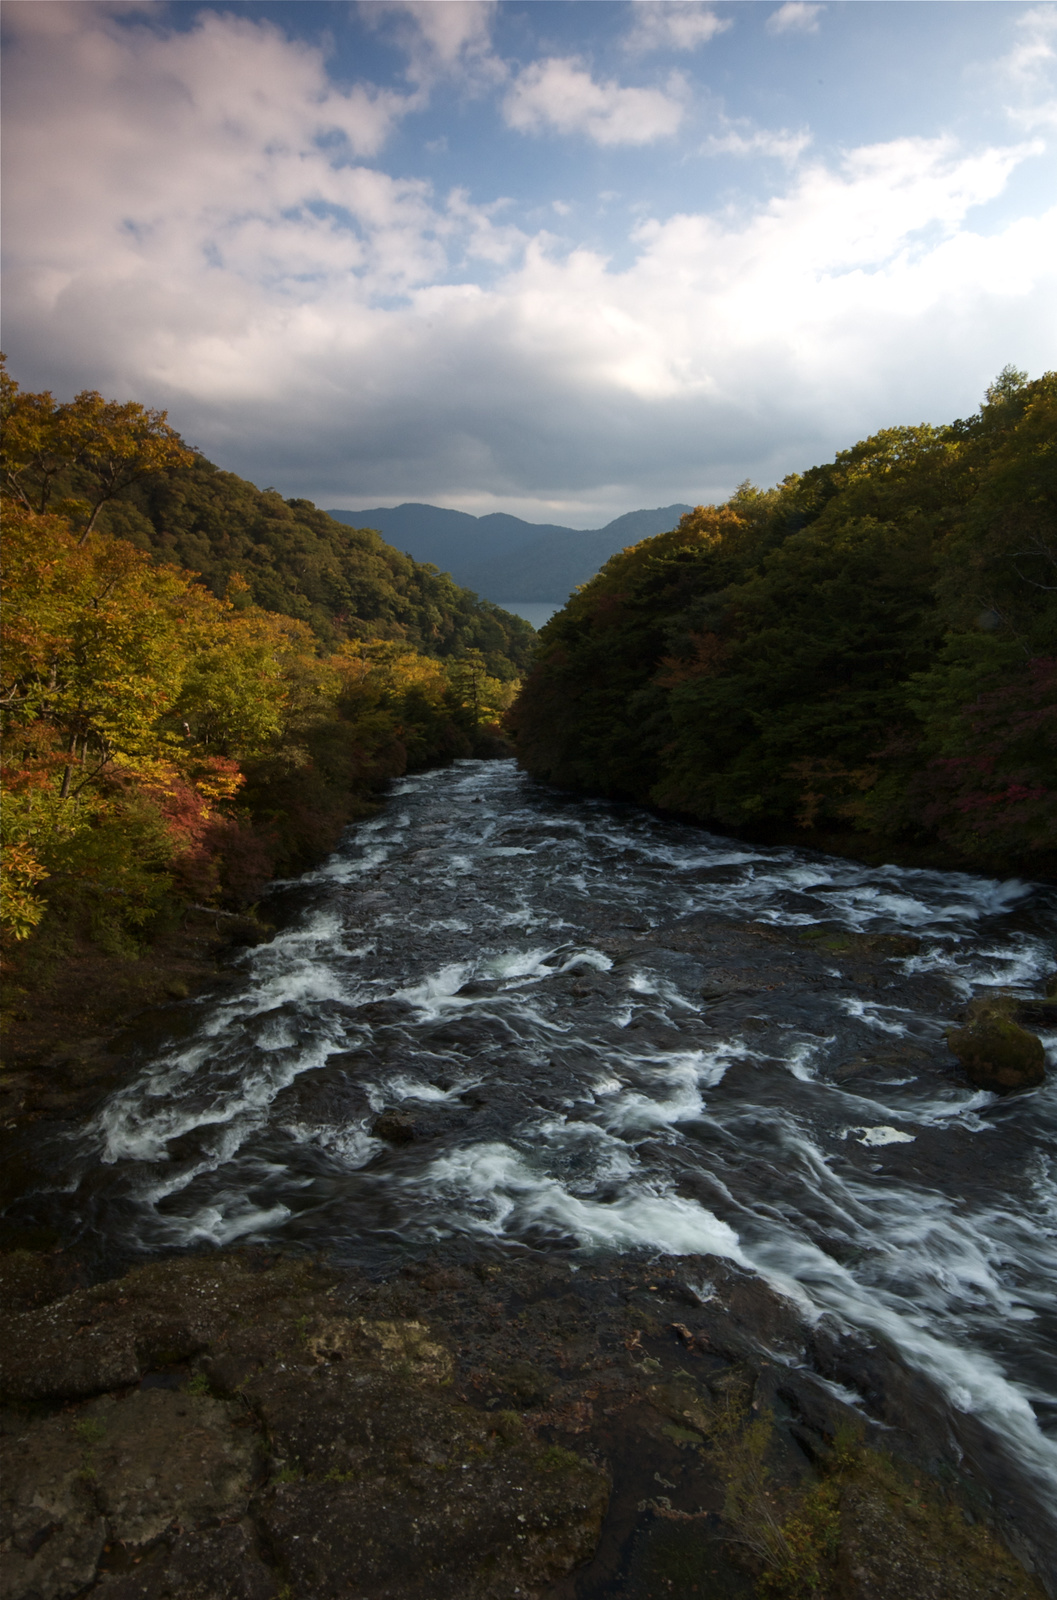 Ryuzu falls - Nikko